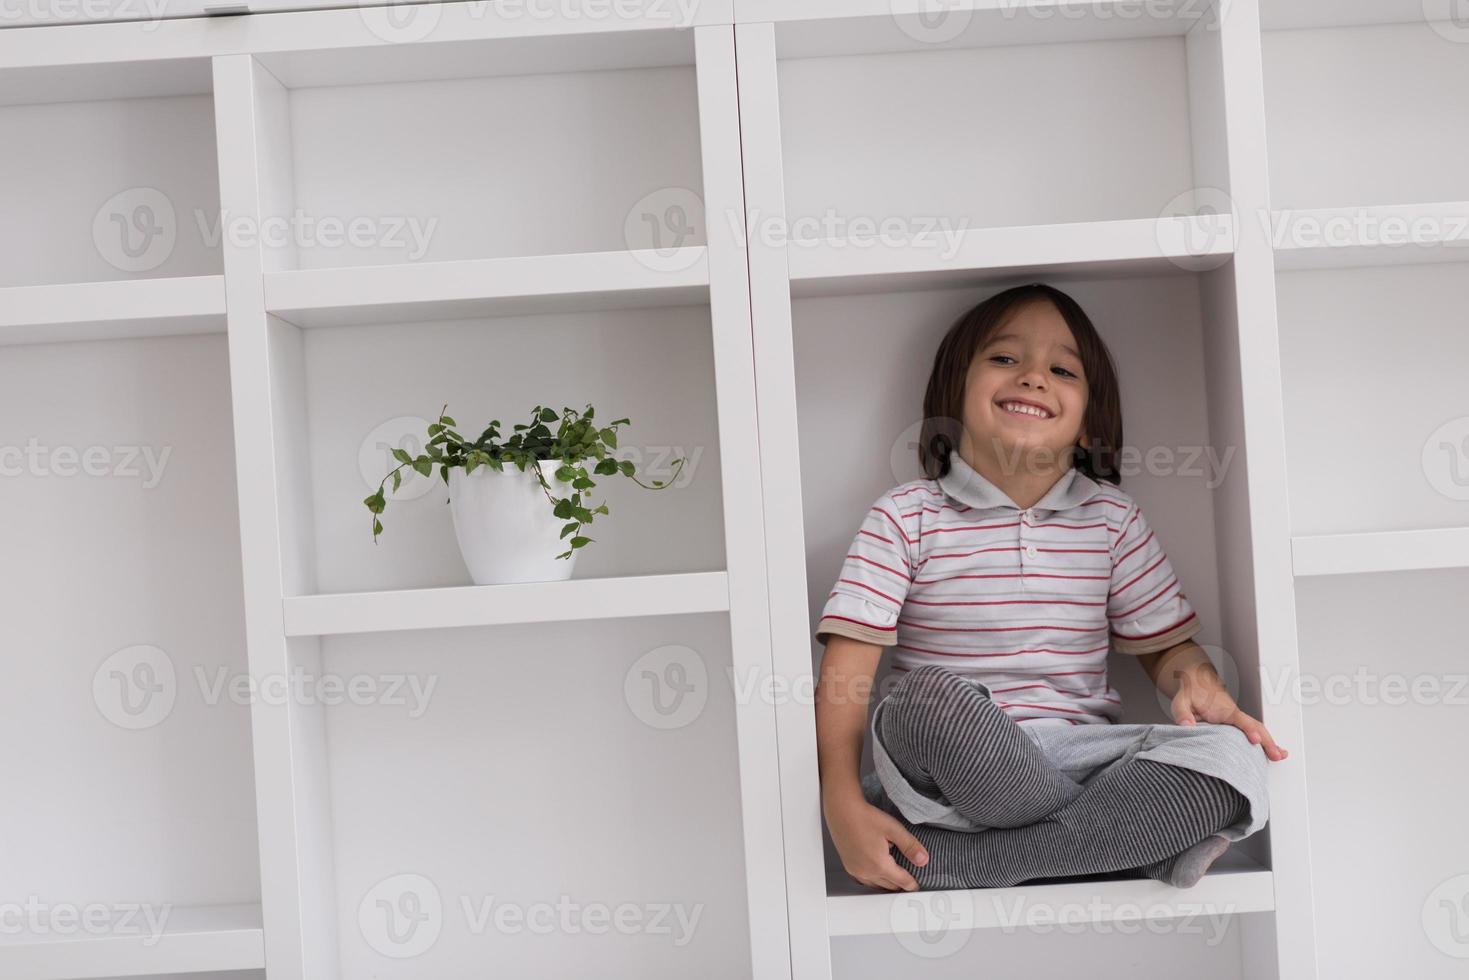 jeune garçon posant sur une étagère photo